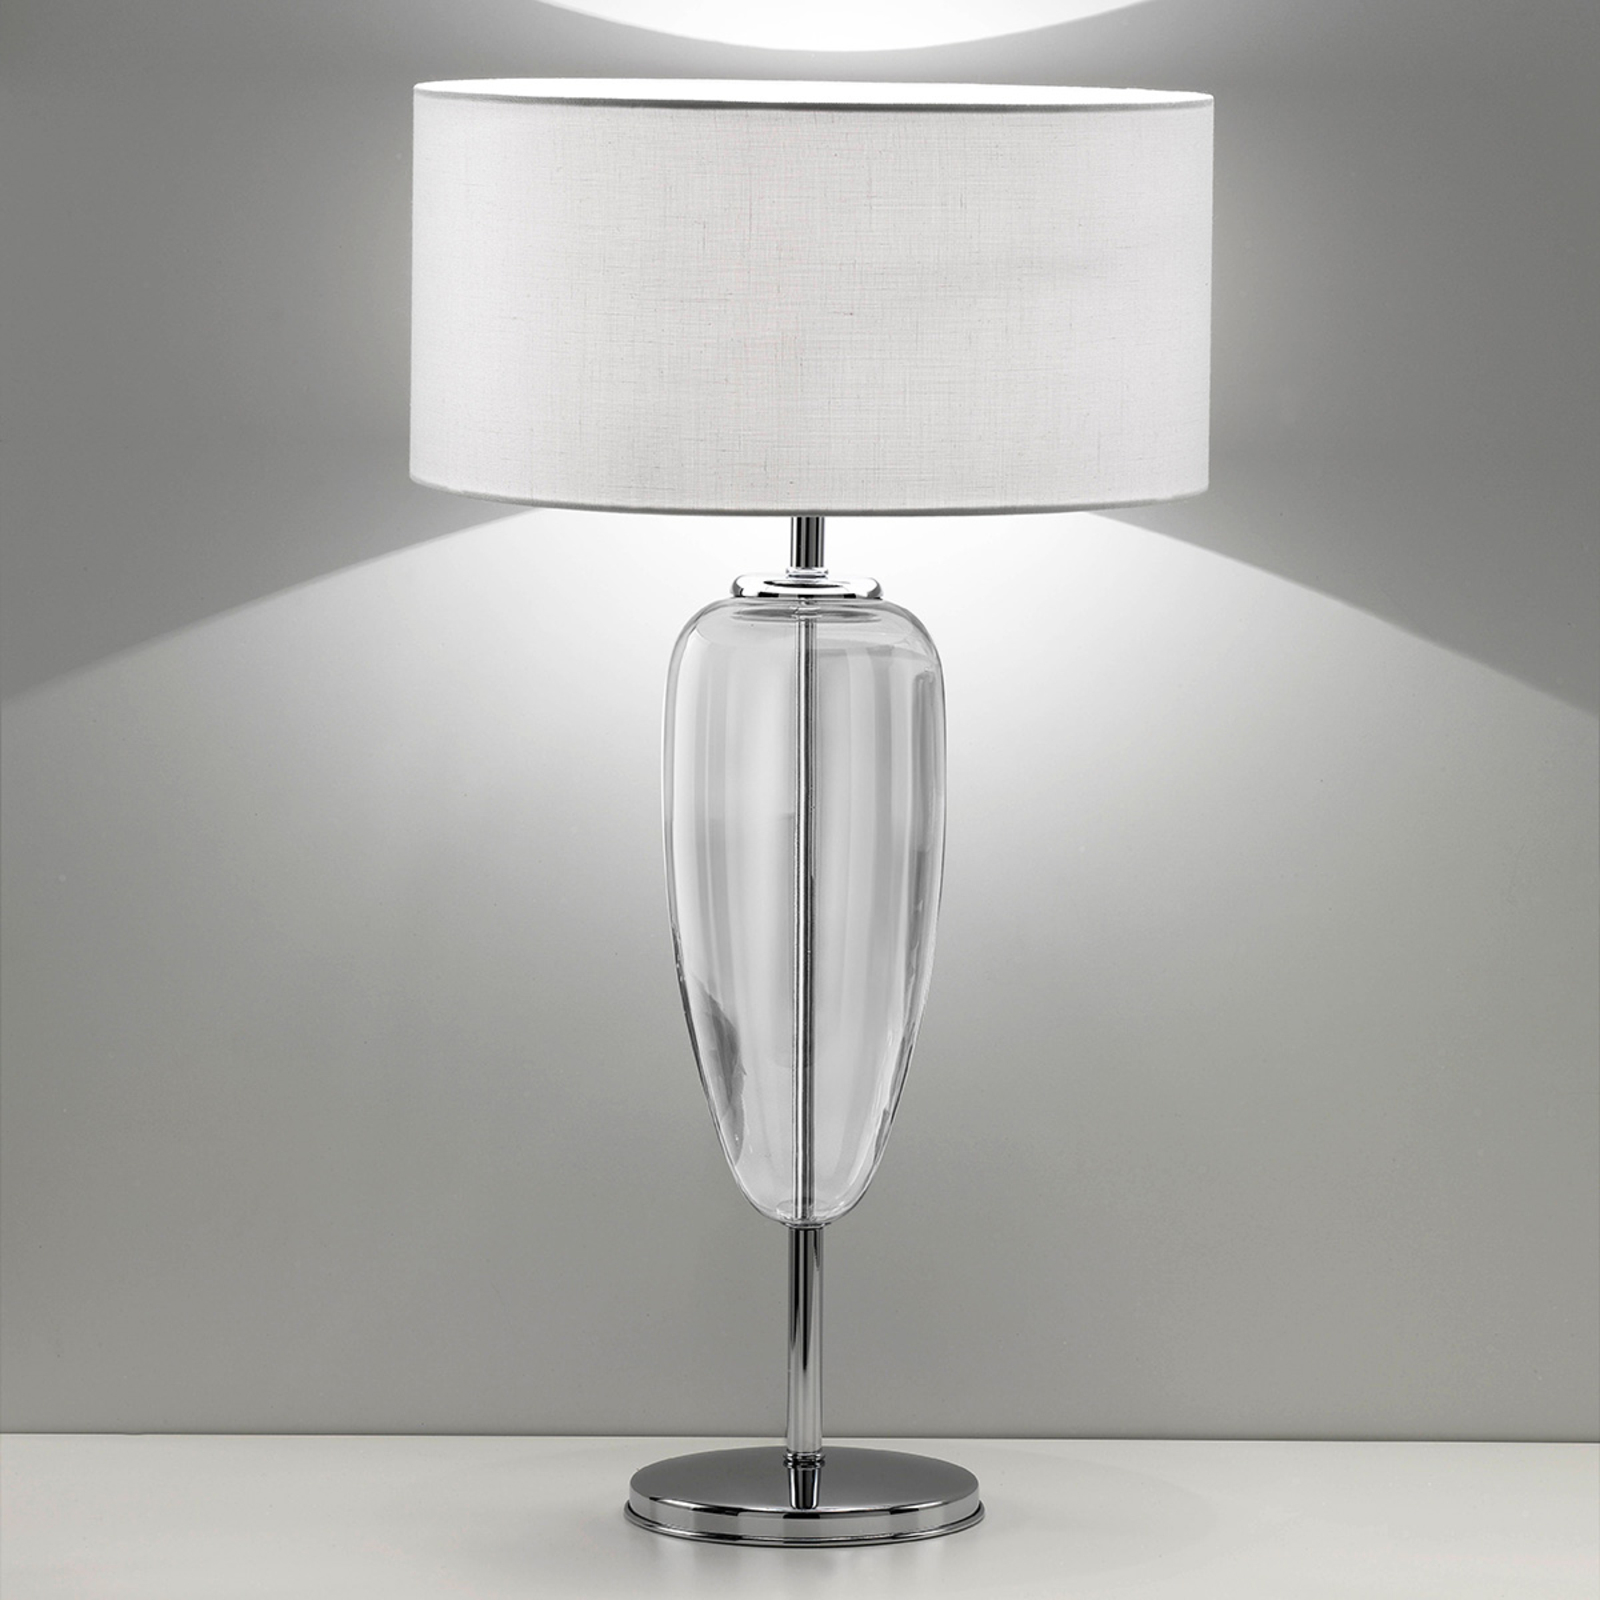 Tafellamp Ogiva 82 cm helder glaselement